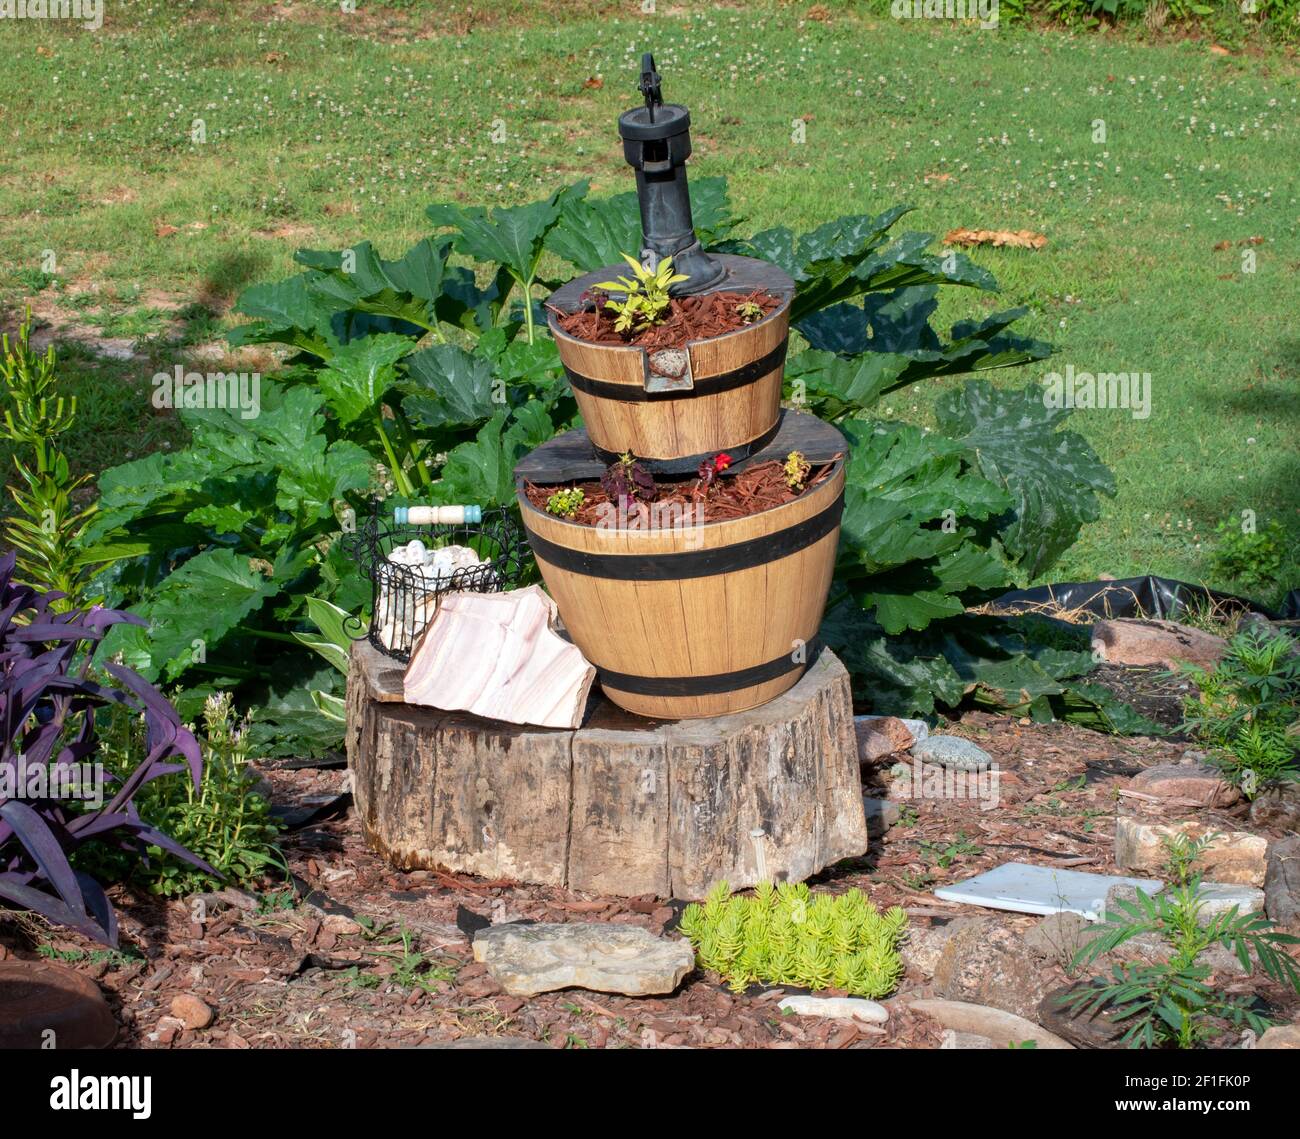 Une fontaine en bois de style pompe a été transformée en point focal d'un jardin d'arrière-cour dans le sud-ouest du Missouri pour un ornement unique d'intérêt. Bokeh Banque D'Images